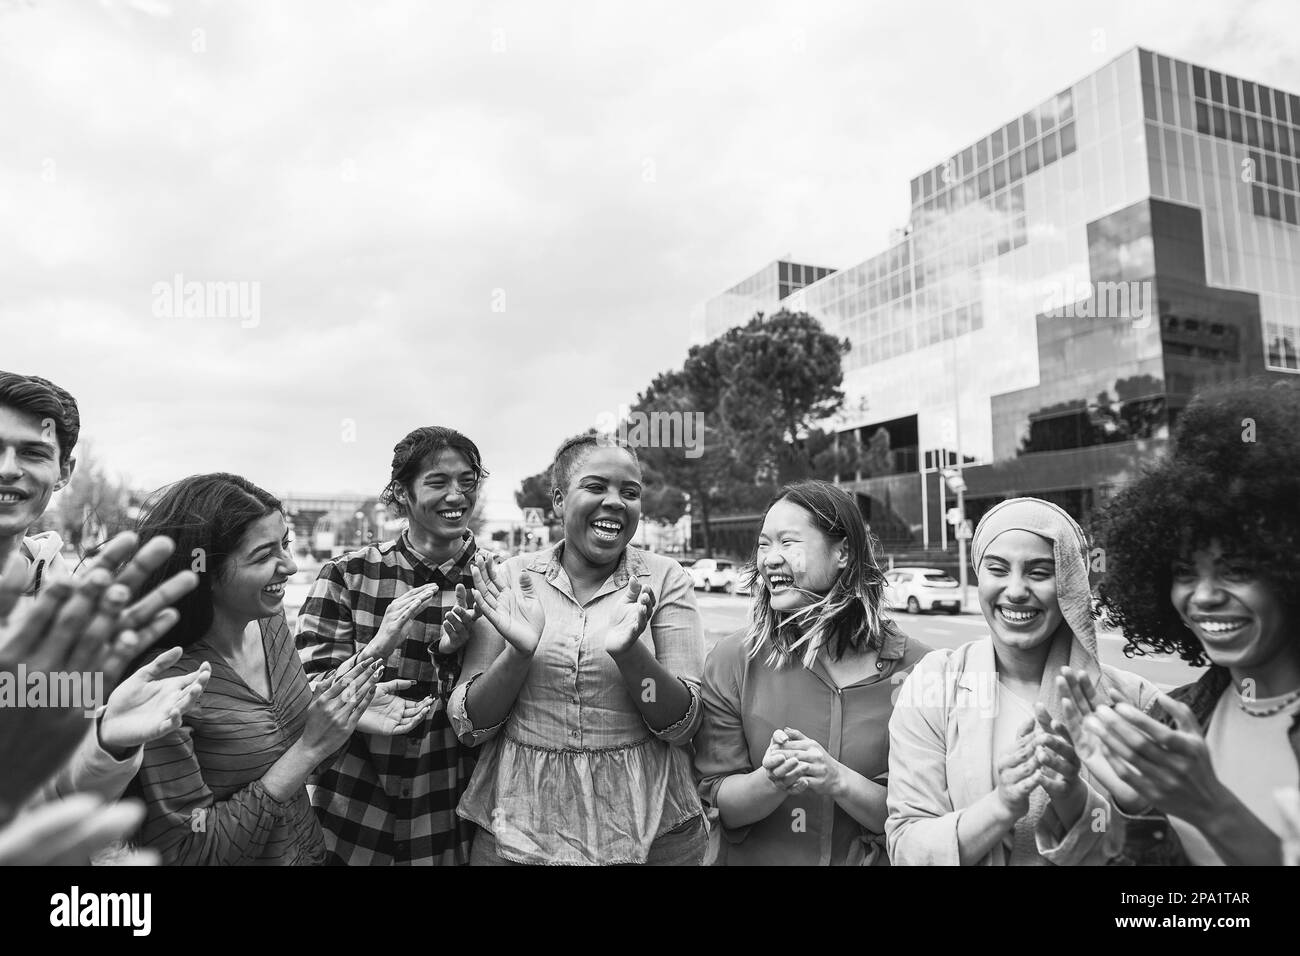 Junge, vielfältige Menschen feiern gemeinsam im Freien – Fokus auf afrikanisches kurvenreiches Mädchengesicht – Schwarz-Weiß-Bearbeitung Stockfoto